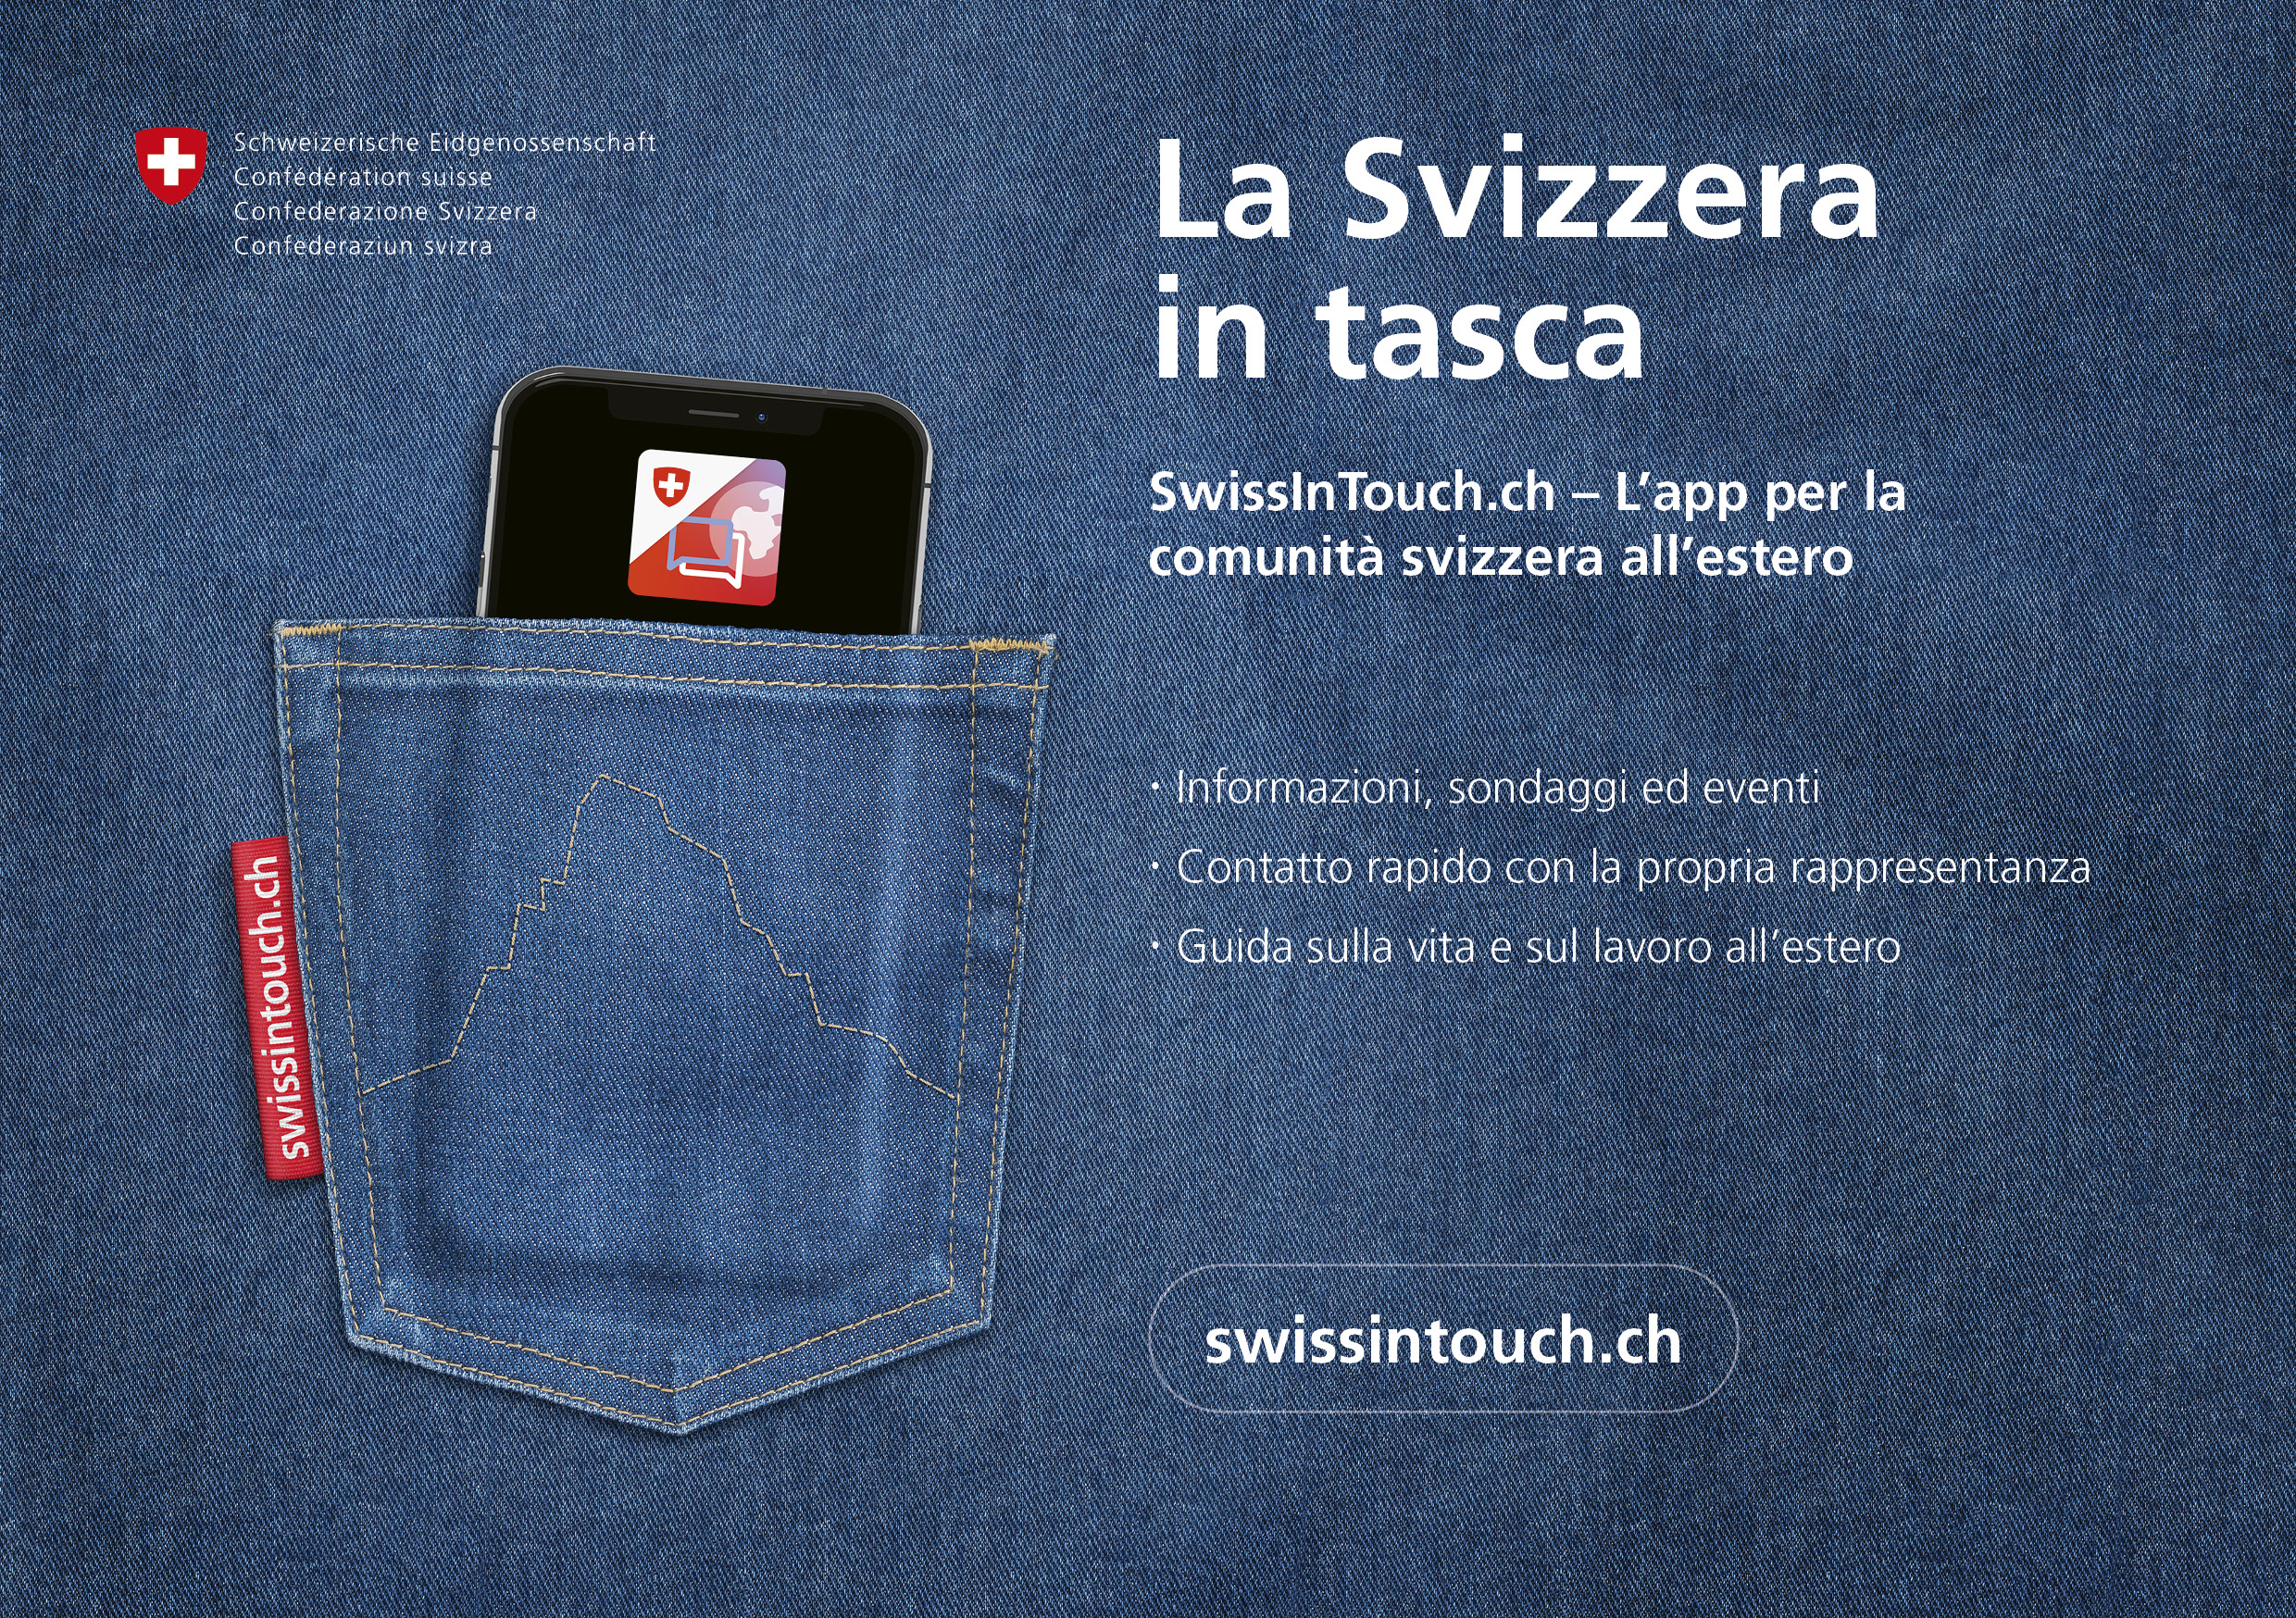 Slogan e presentazione di SwissInTouch